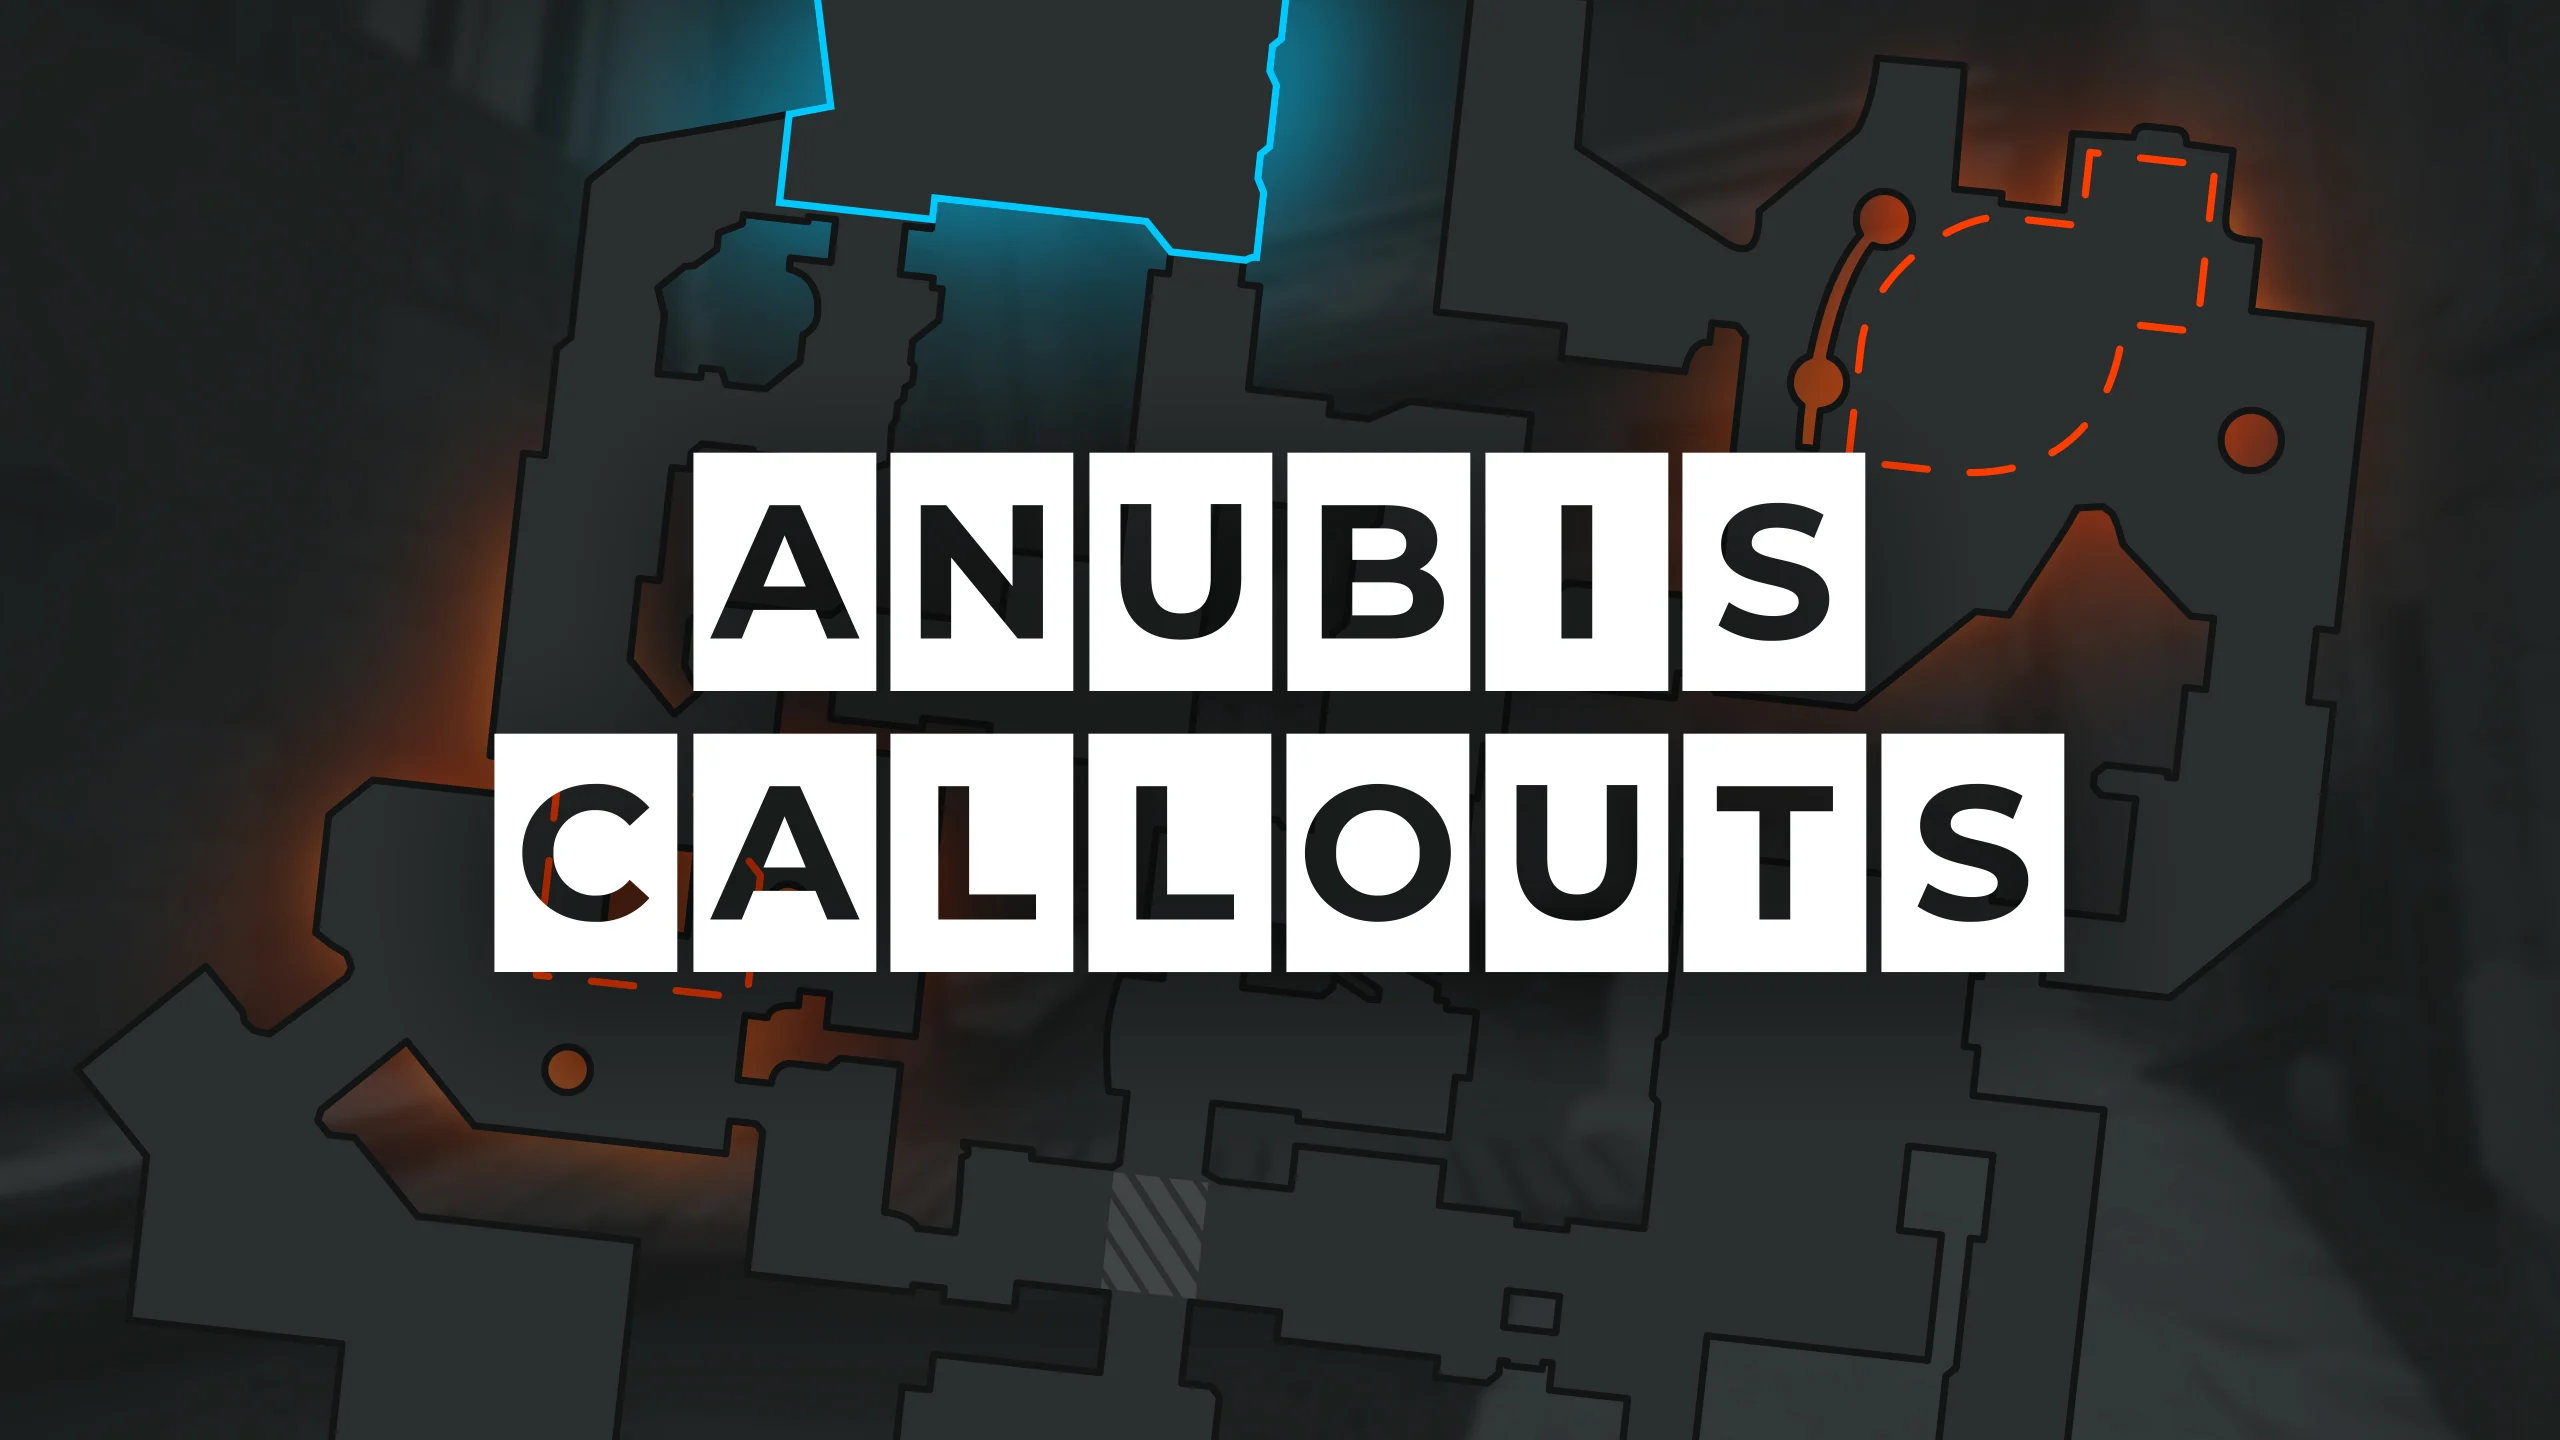 Map Callouts: Anubis